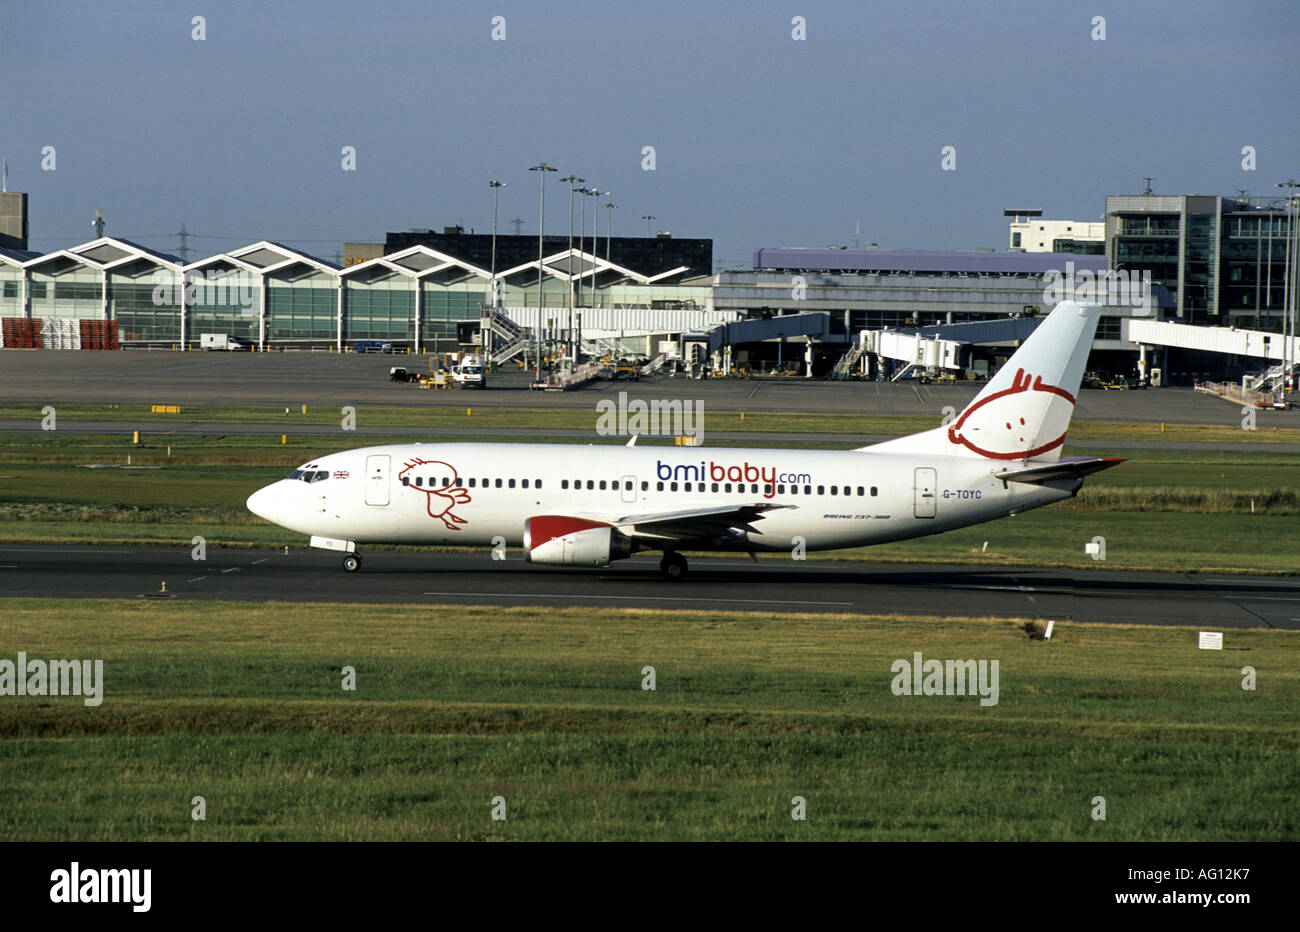 Bmi baby Boeing 737 sur le point de décoller à l'Aéroport International de Birmingham, West Midlands, England, UK Banque D'Images